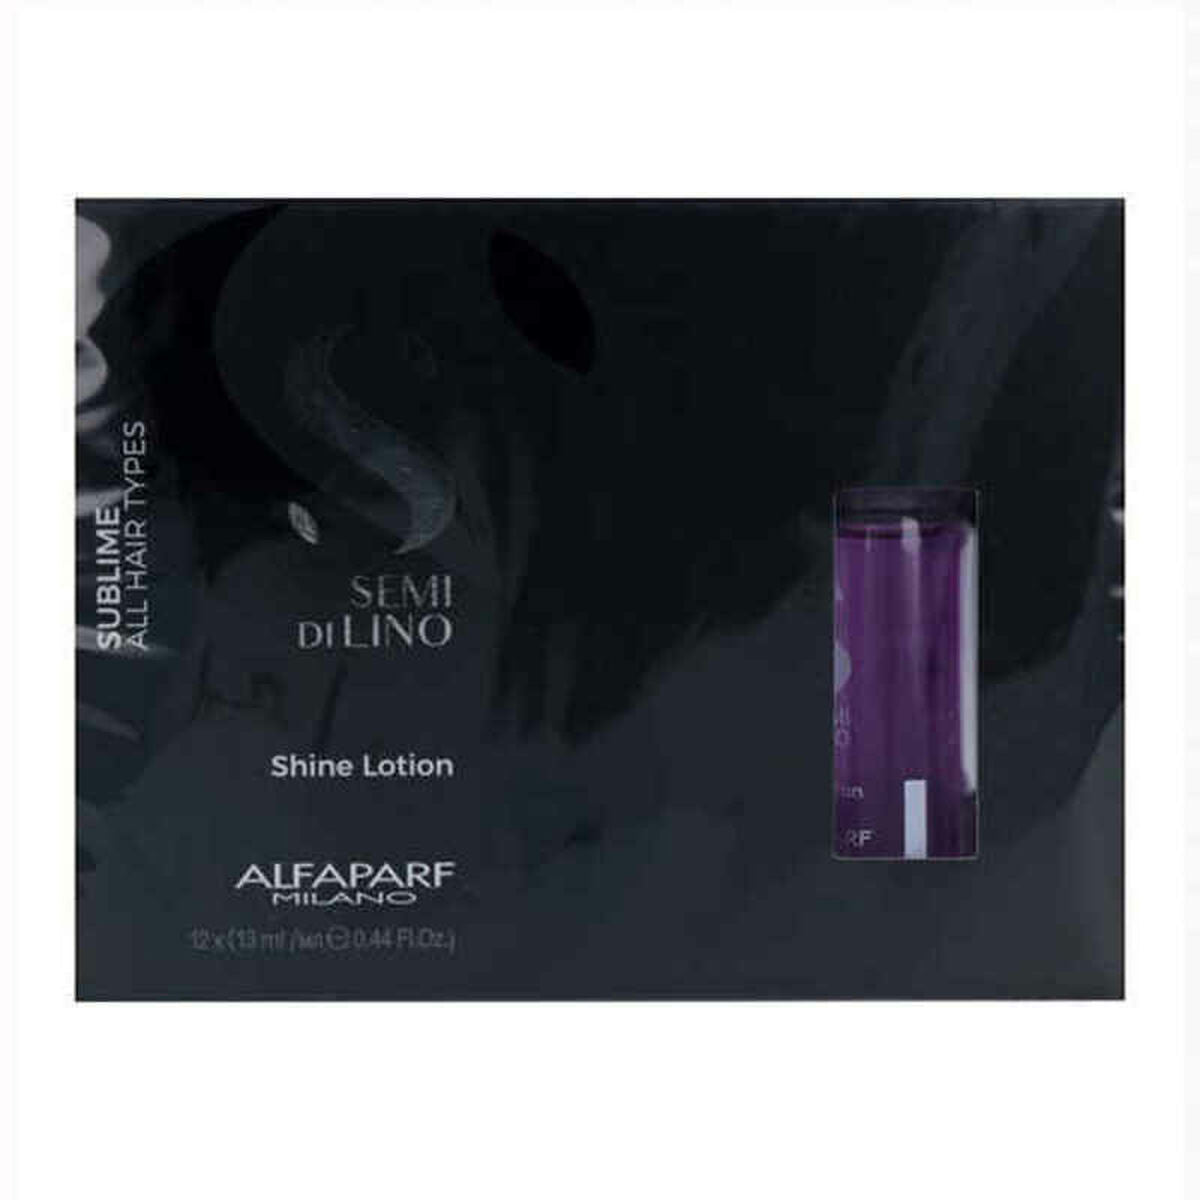 Behandling for å beskytte håret Semi di Lino Sublime Shine Lotion Alfaparf Milano (12 x 13 ml)